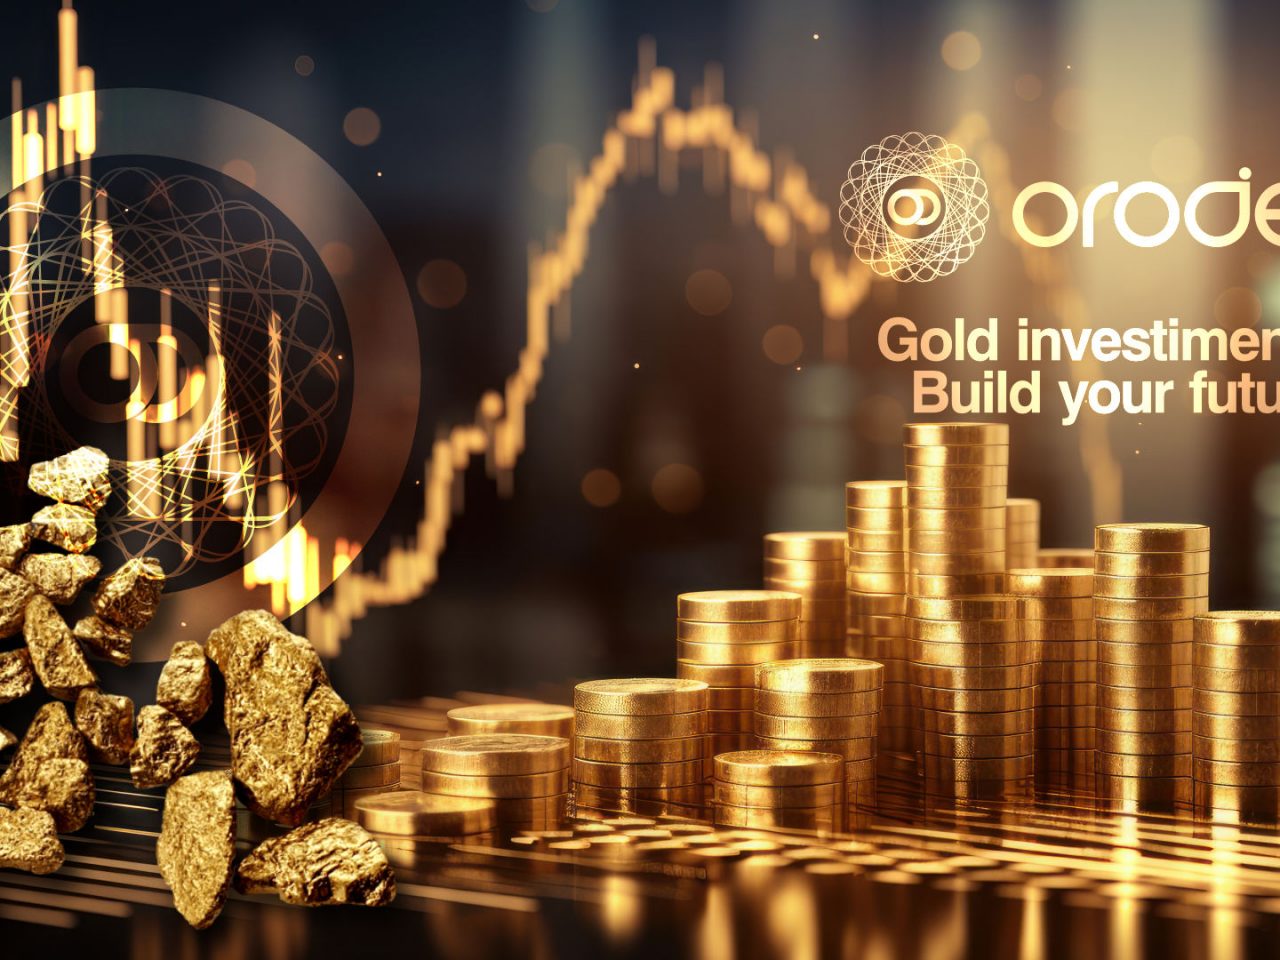 Orodei Banco Metalli Preziosi: Opportunità di Investimento in Oro mentre i Prezzi si Avvicinano a 2.000 Dollari